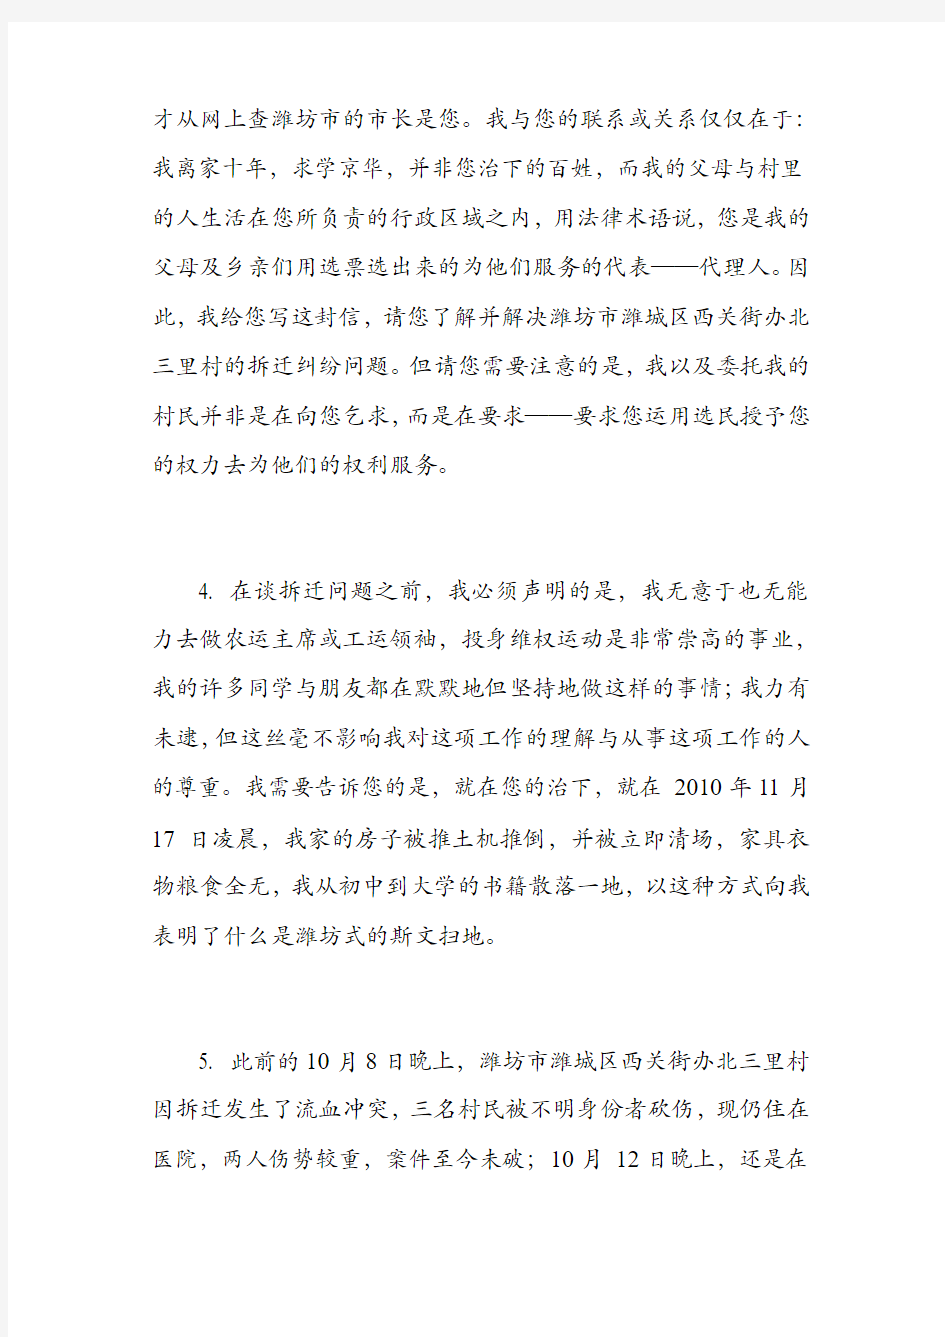 法学博士清华大学王进文致工学博士潍坊市长许立全先生有关拆迁问题的公开信